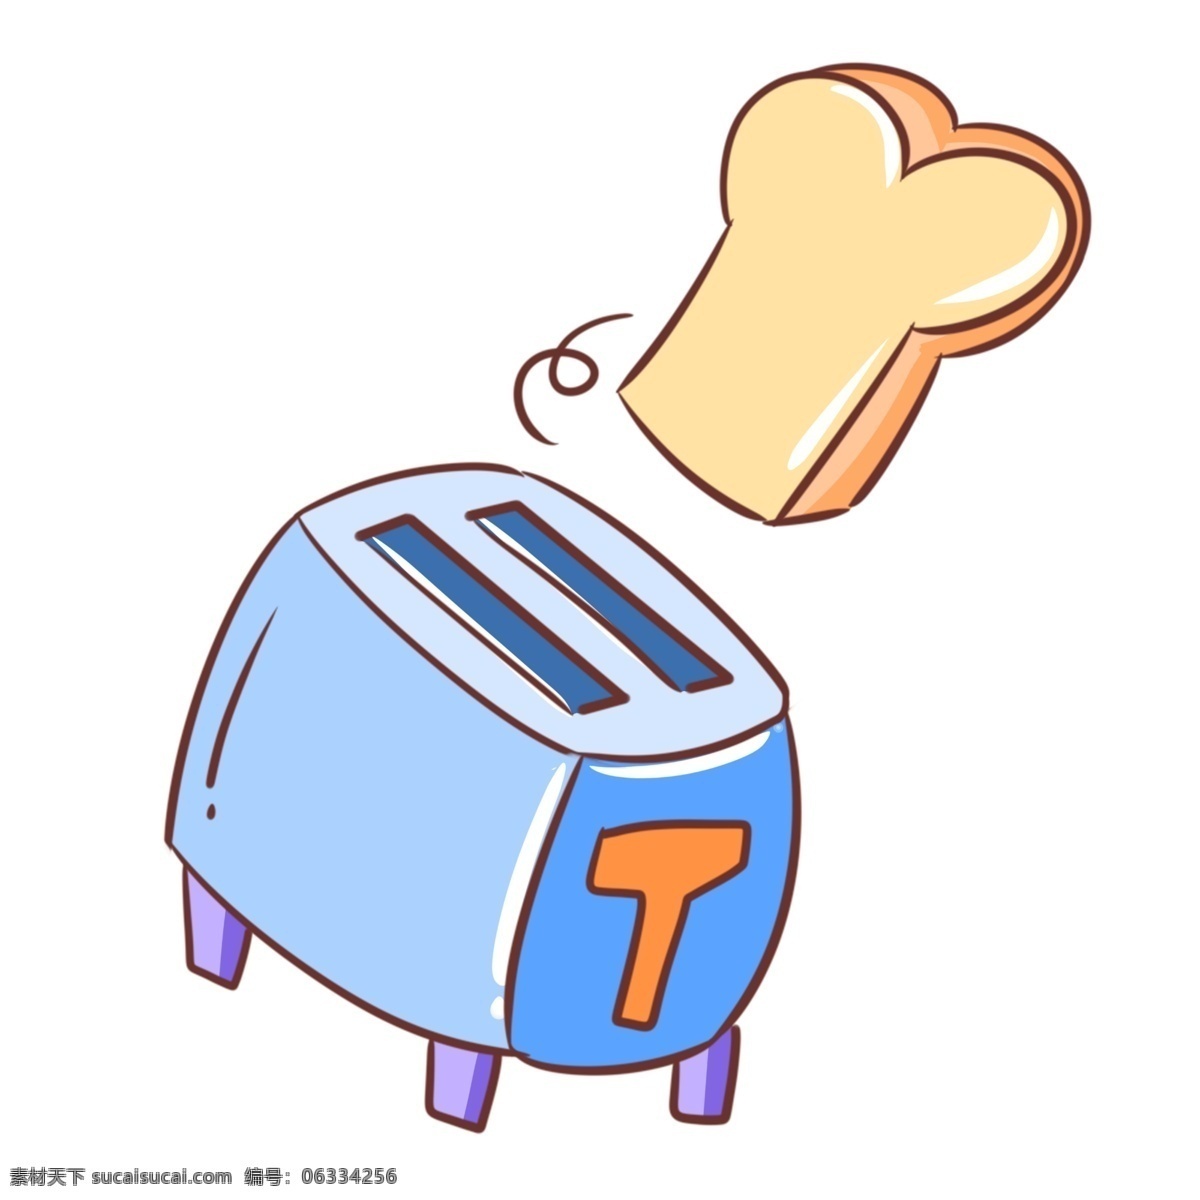 蓝色 卡通 面包机 插图 吐司面包 蓝色面包机 卡通面包机 面包机插图 蓝色电器 家电 面包